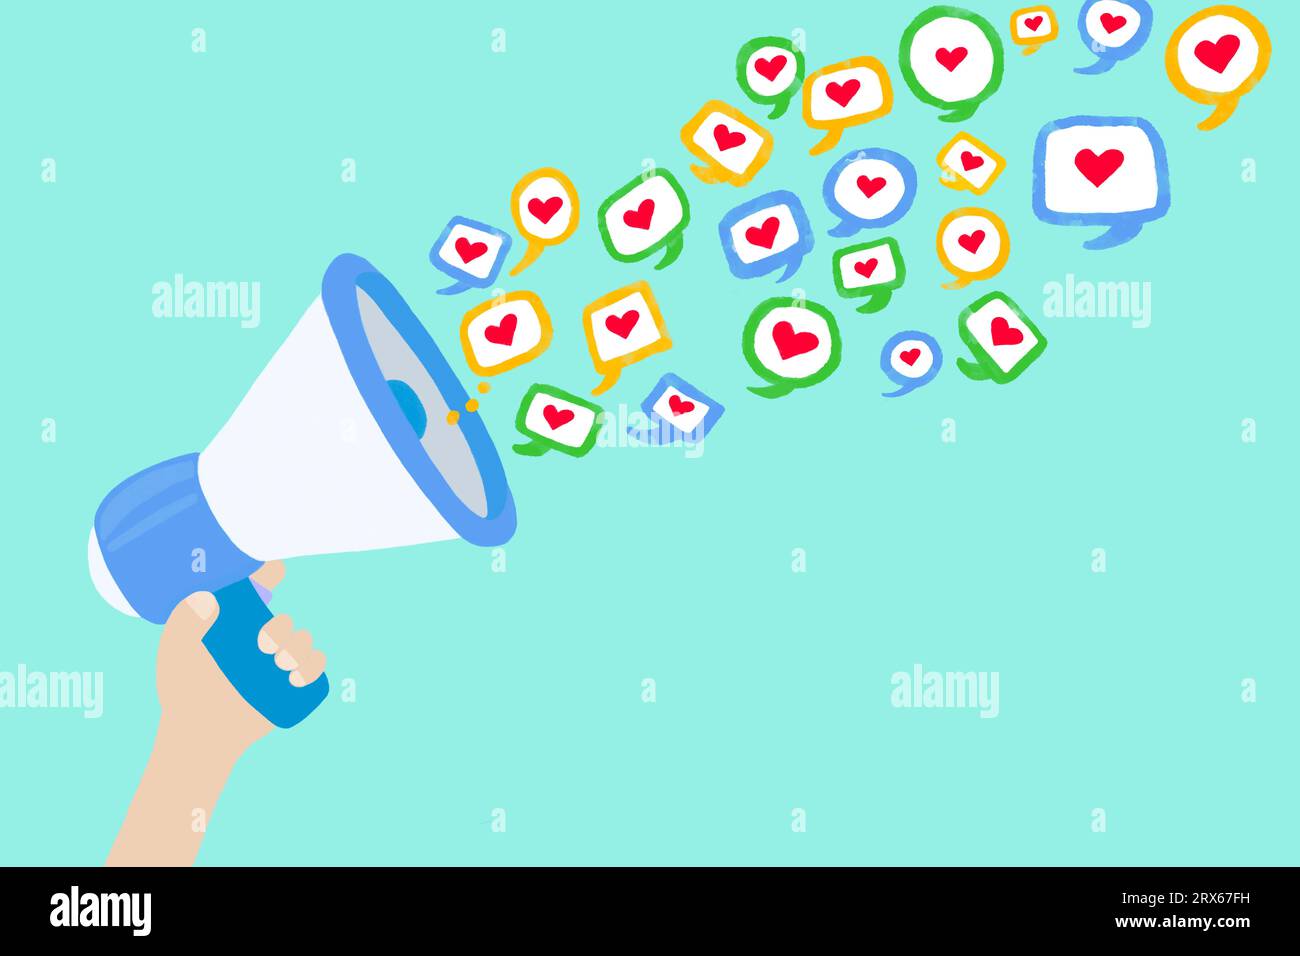 Abbildung: Hand hält Megaphon und spuckt herzförmige Symbole in sozialen Medien Stockfoto